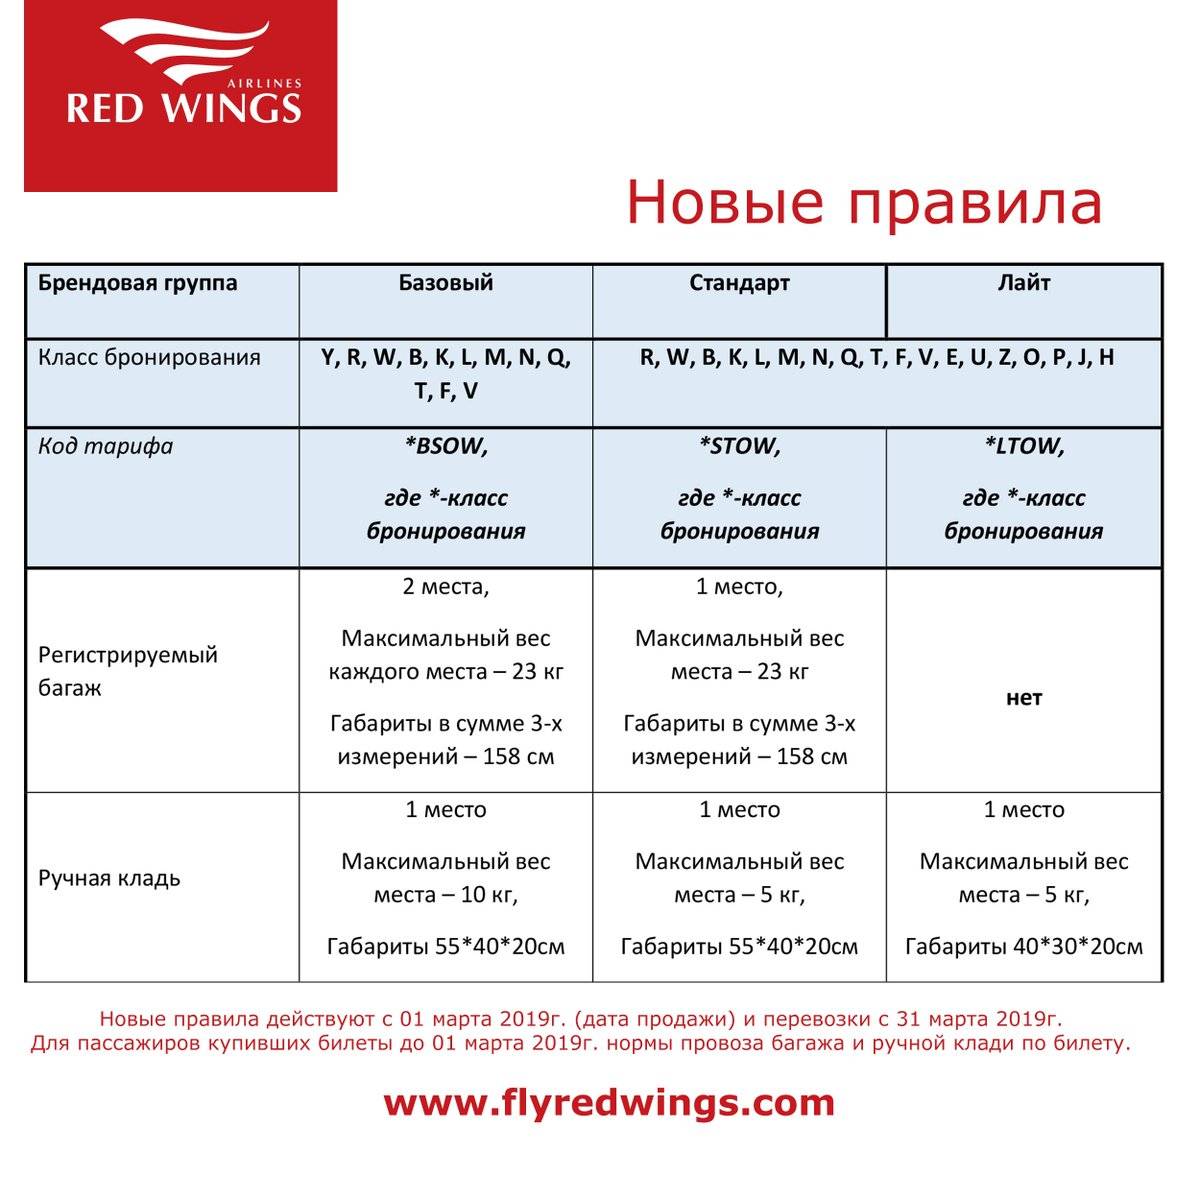 Red wings: регистрация на рейс онлайн в авиакомпании ред вингс, поэтапное руководство, правила и ограничения